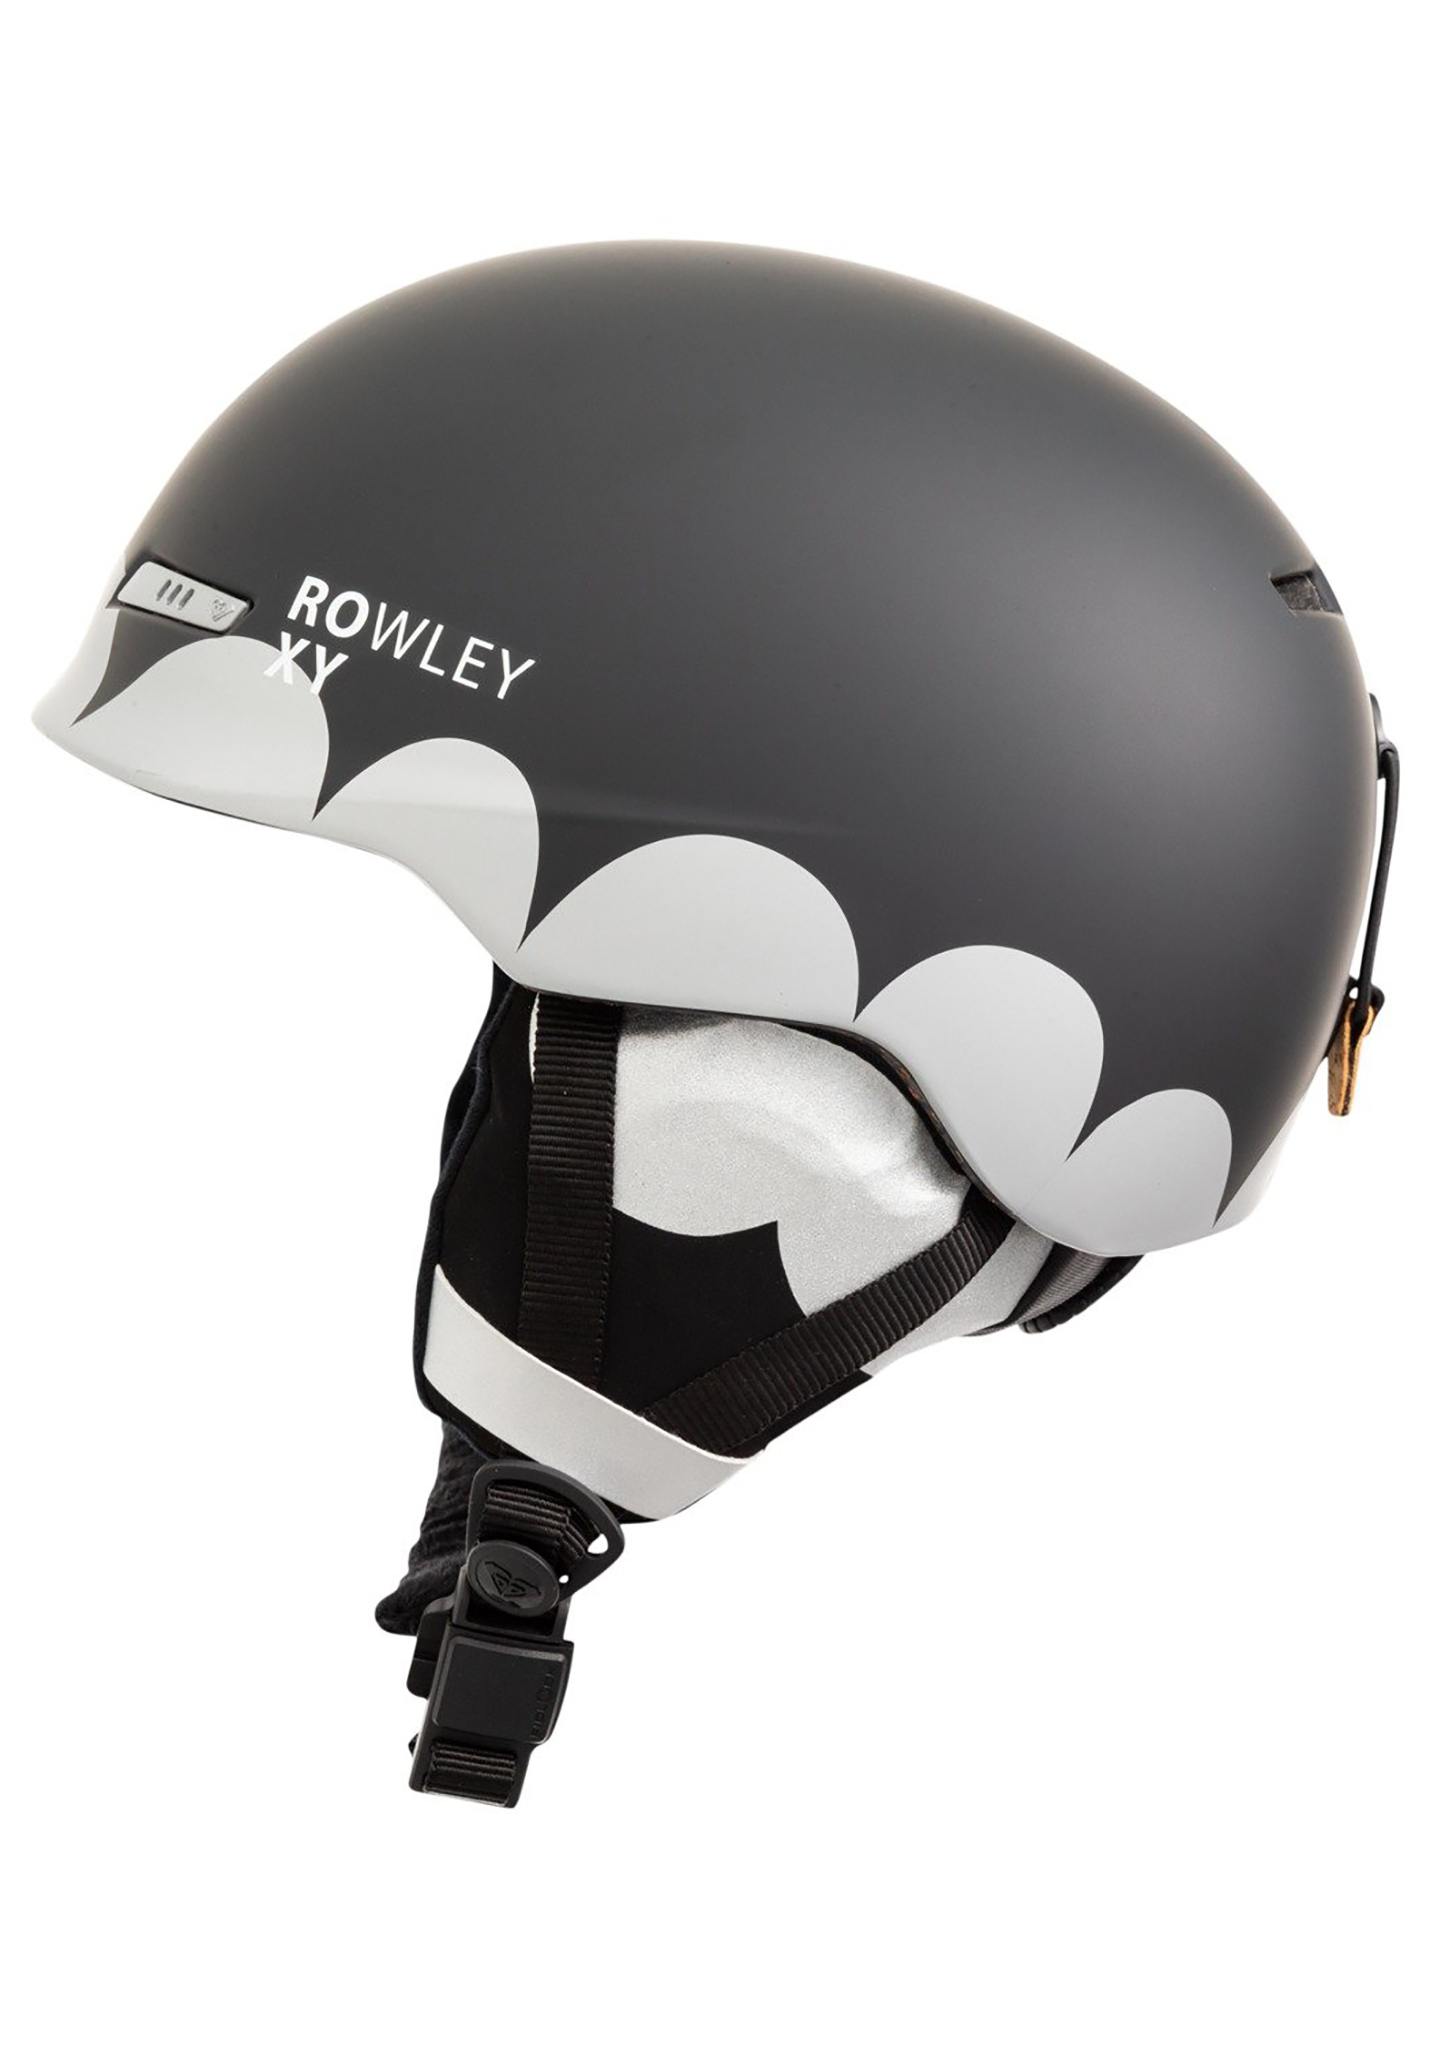 Roxy Rowley X Angie SRT Snowboardhelme true black M